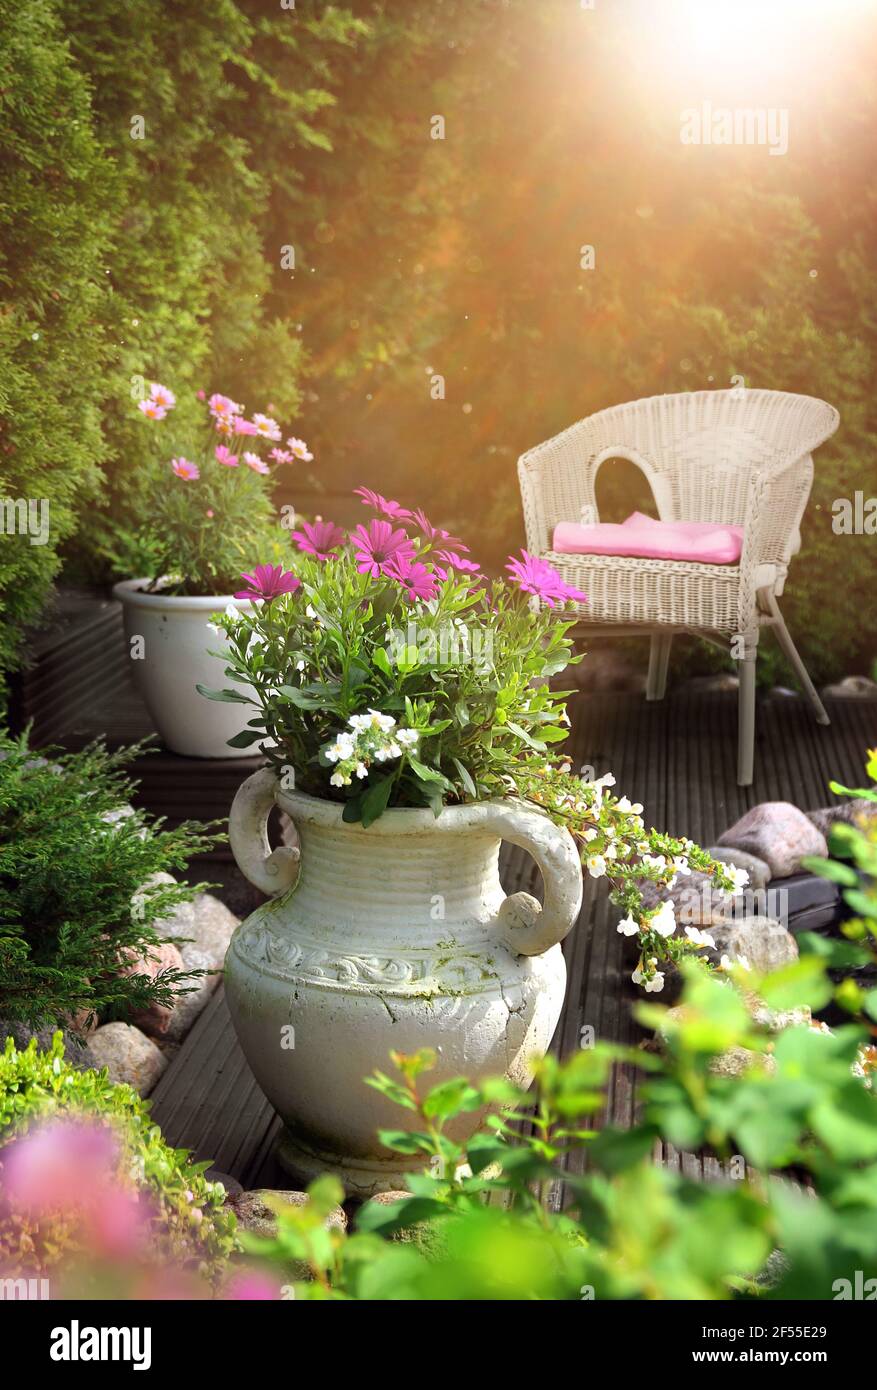 Jardin paisible, ensoleillé et chaleureux, terrasse avec fleurs dans des pots en argile et chaise en osier Banque D'Images